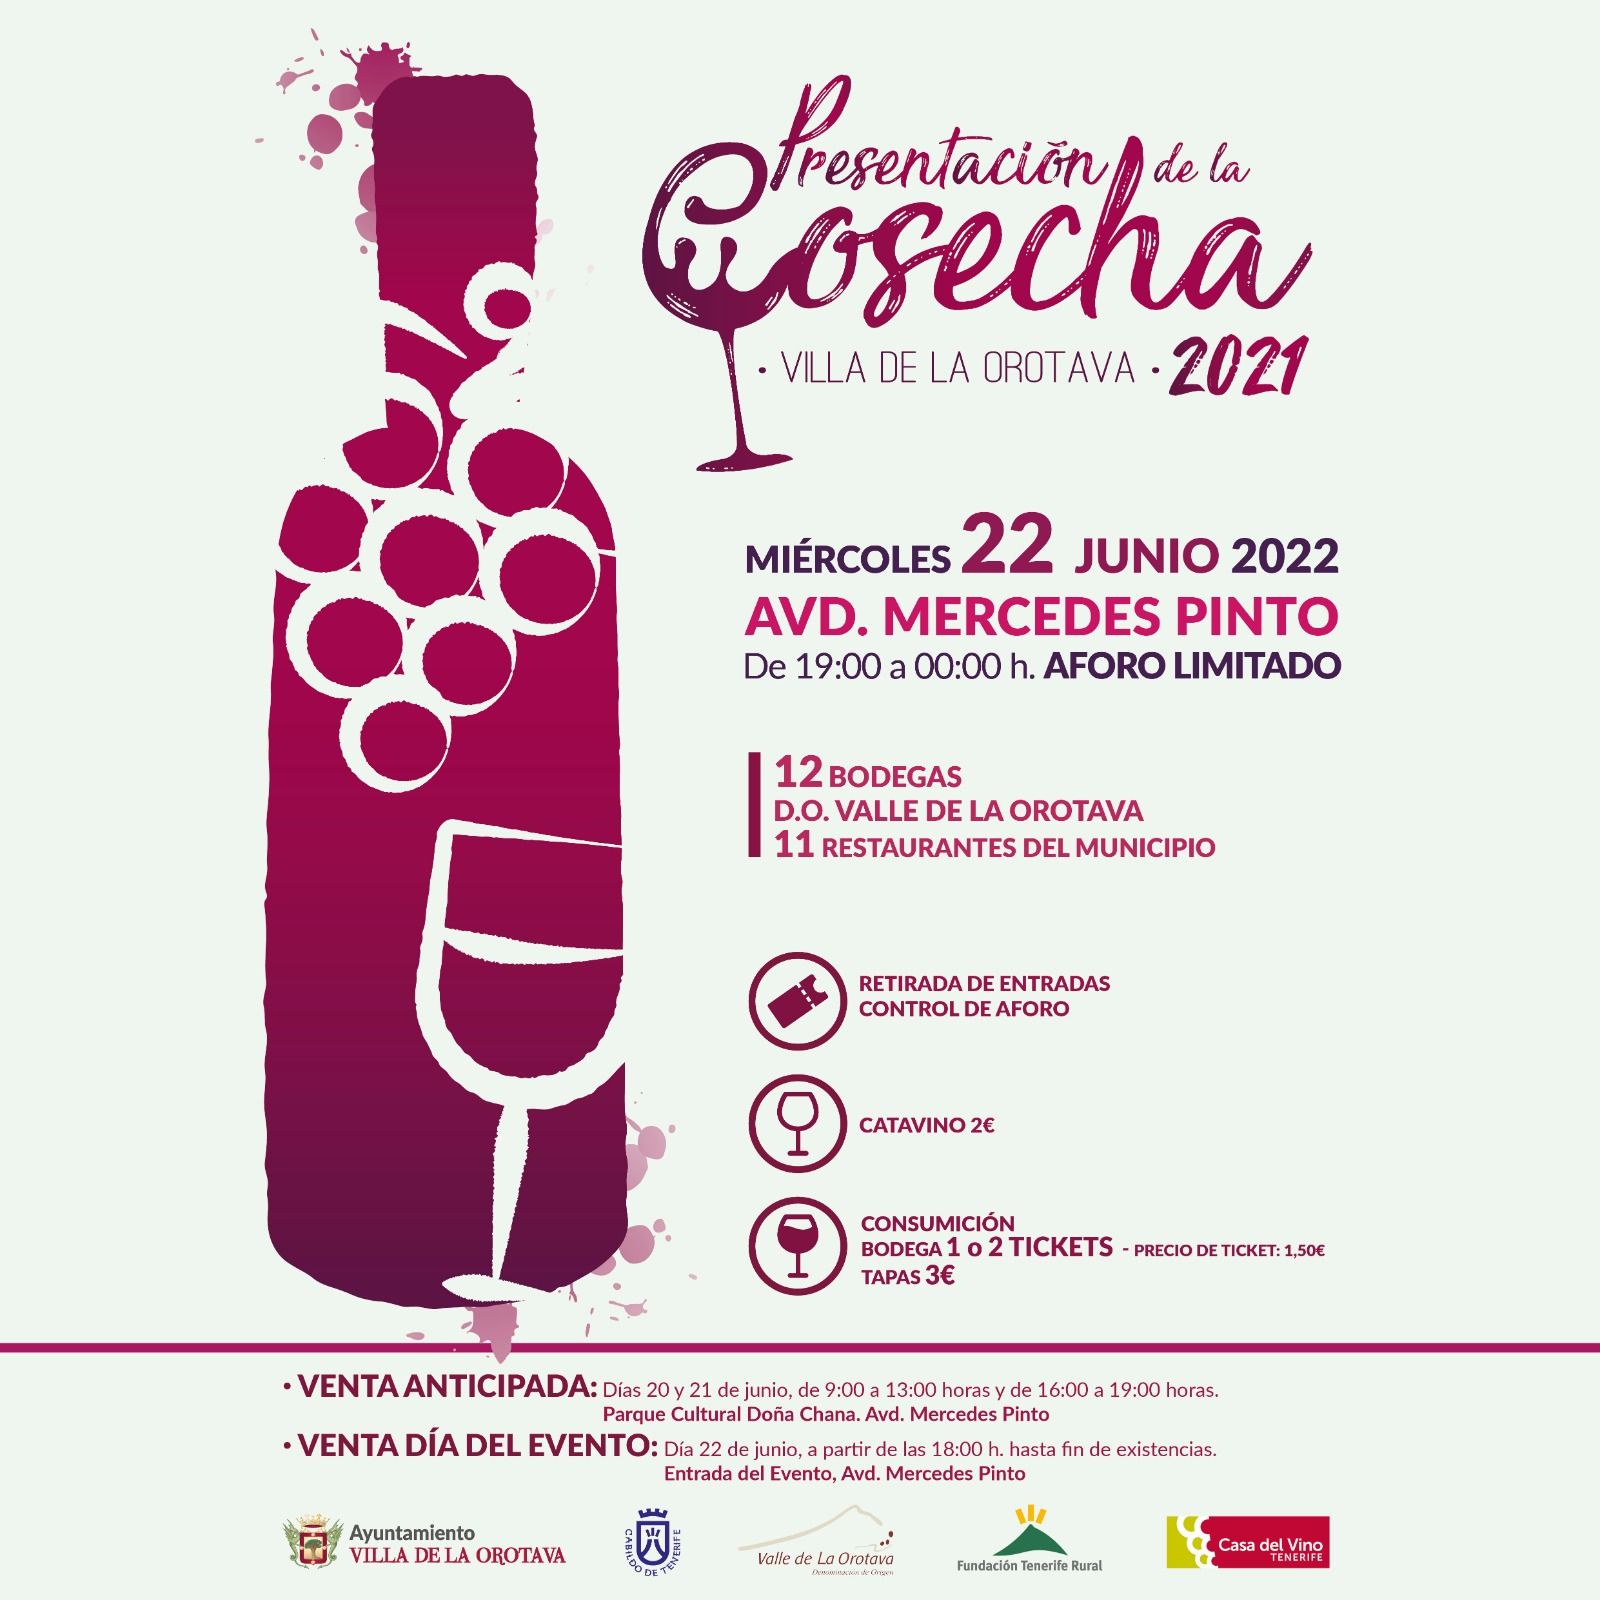 Cartel de la Presentación de la Cosecha de Vinos del Valle de La Orotava en 2022